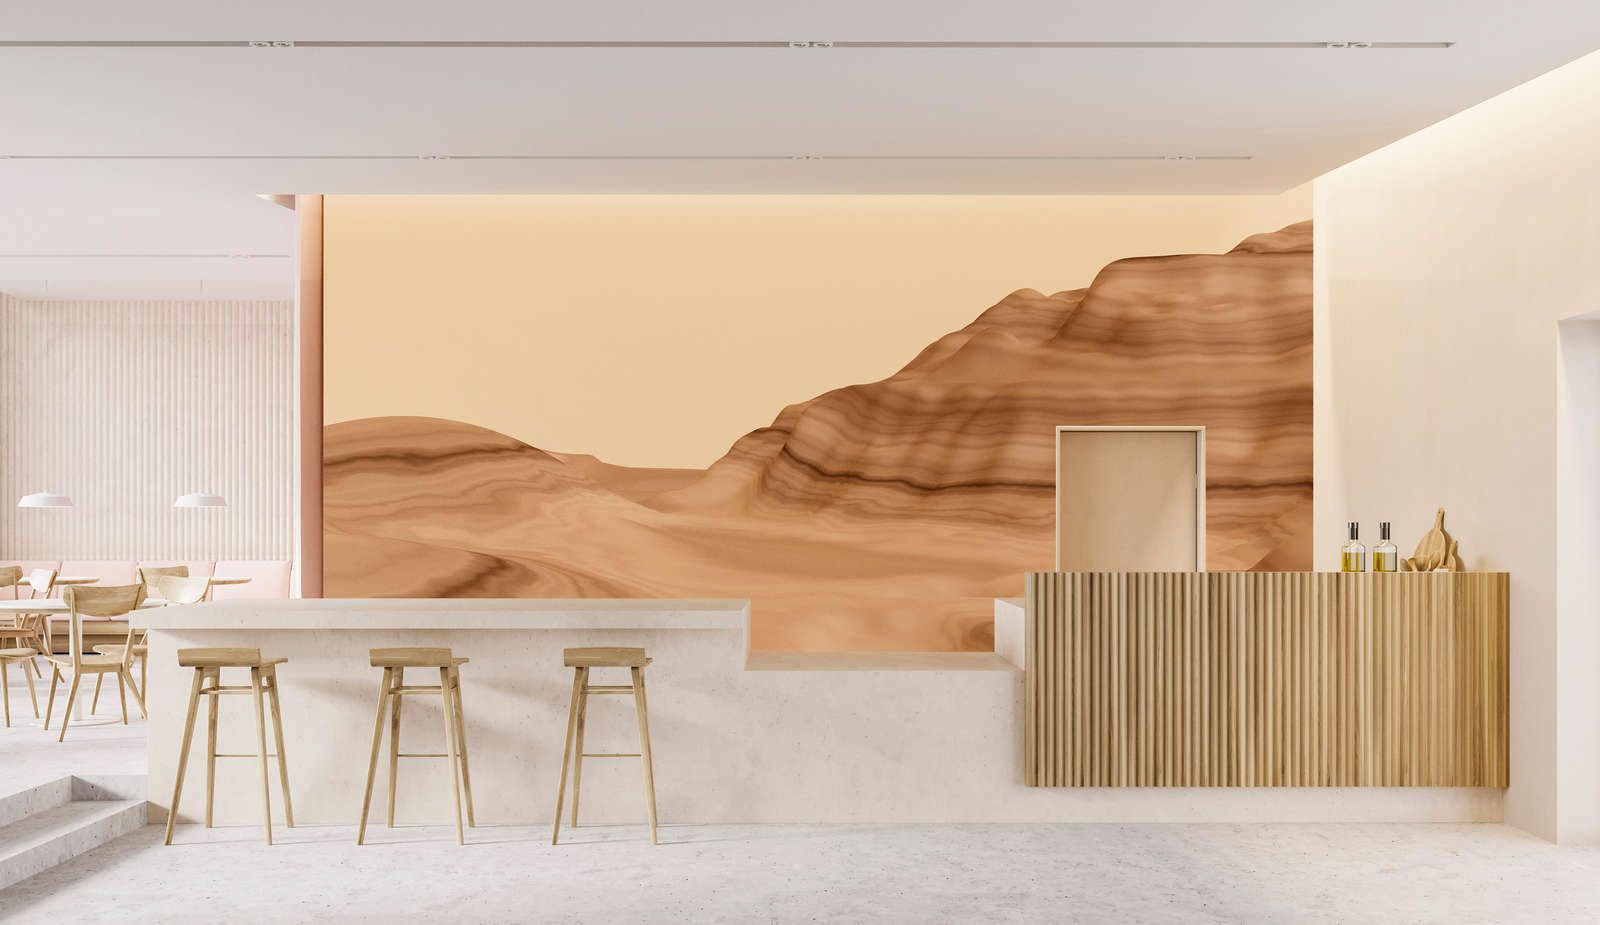             Photo wallpaper »luke« - Abstract desert landscape - Matt, Smooth non-woven fabric
        